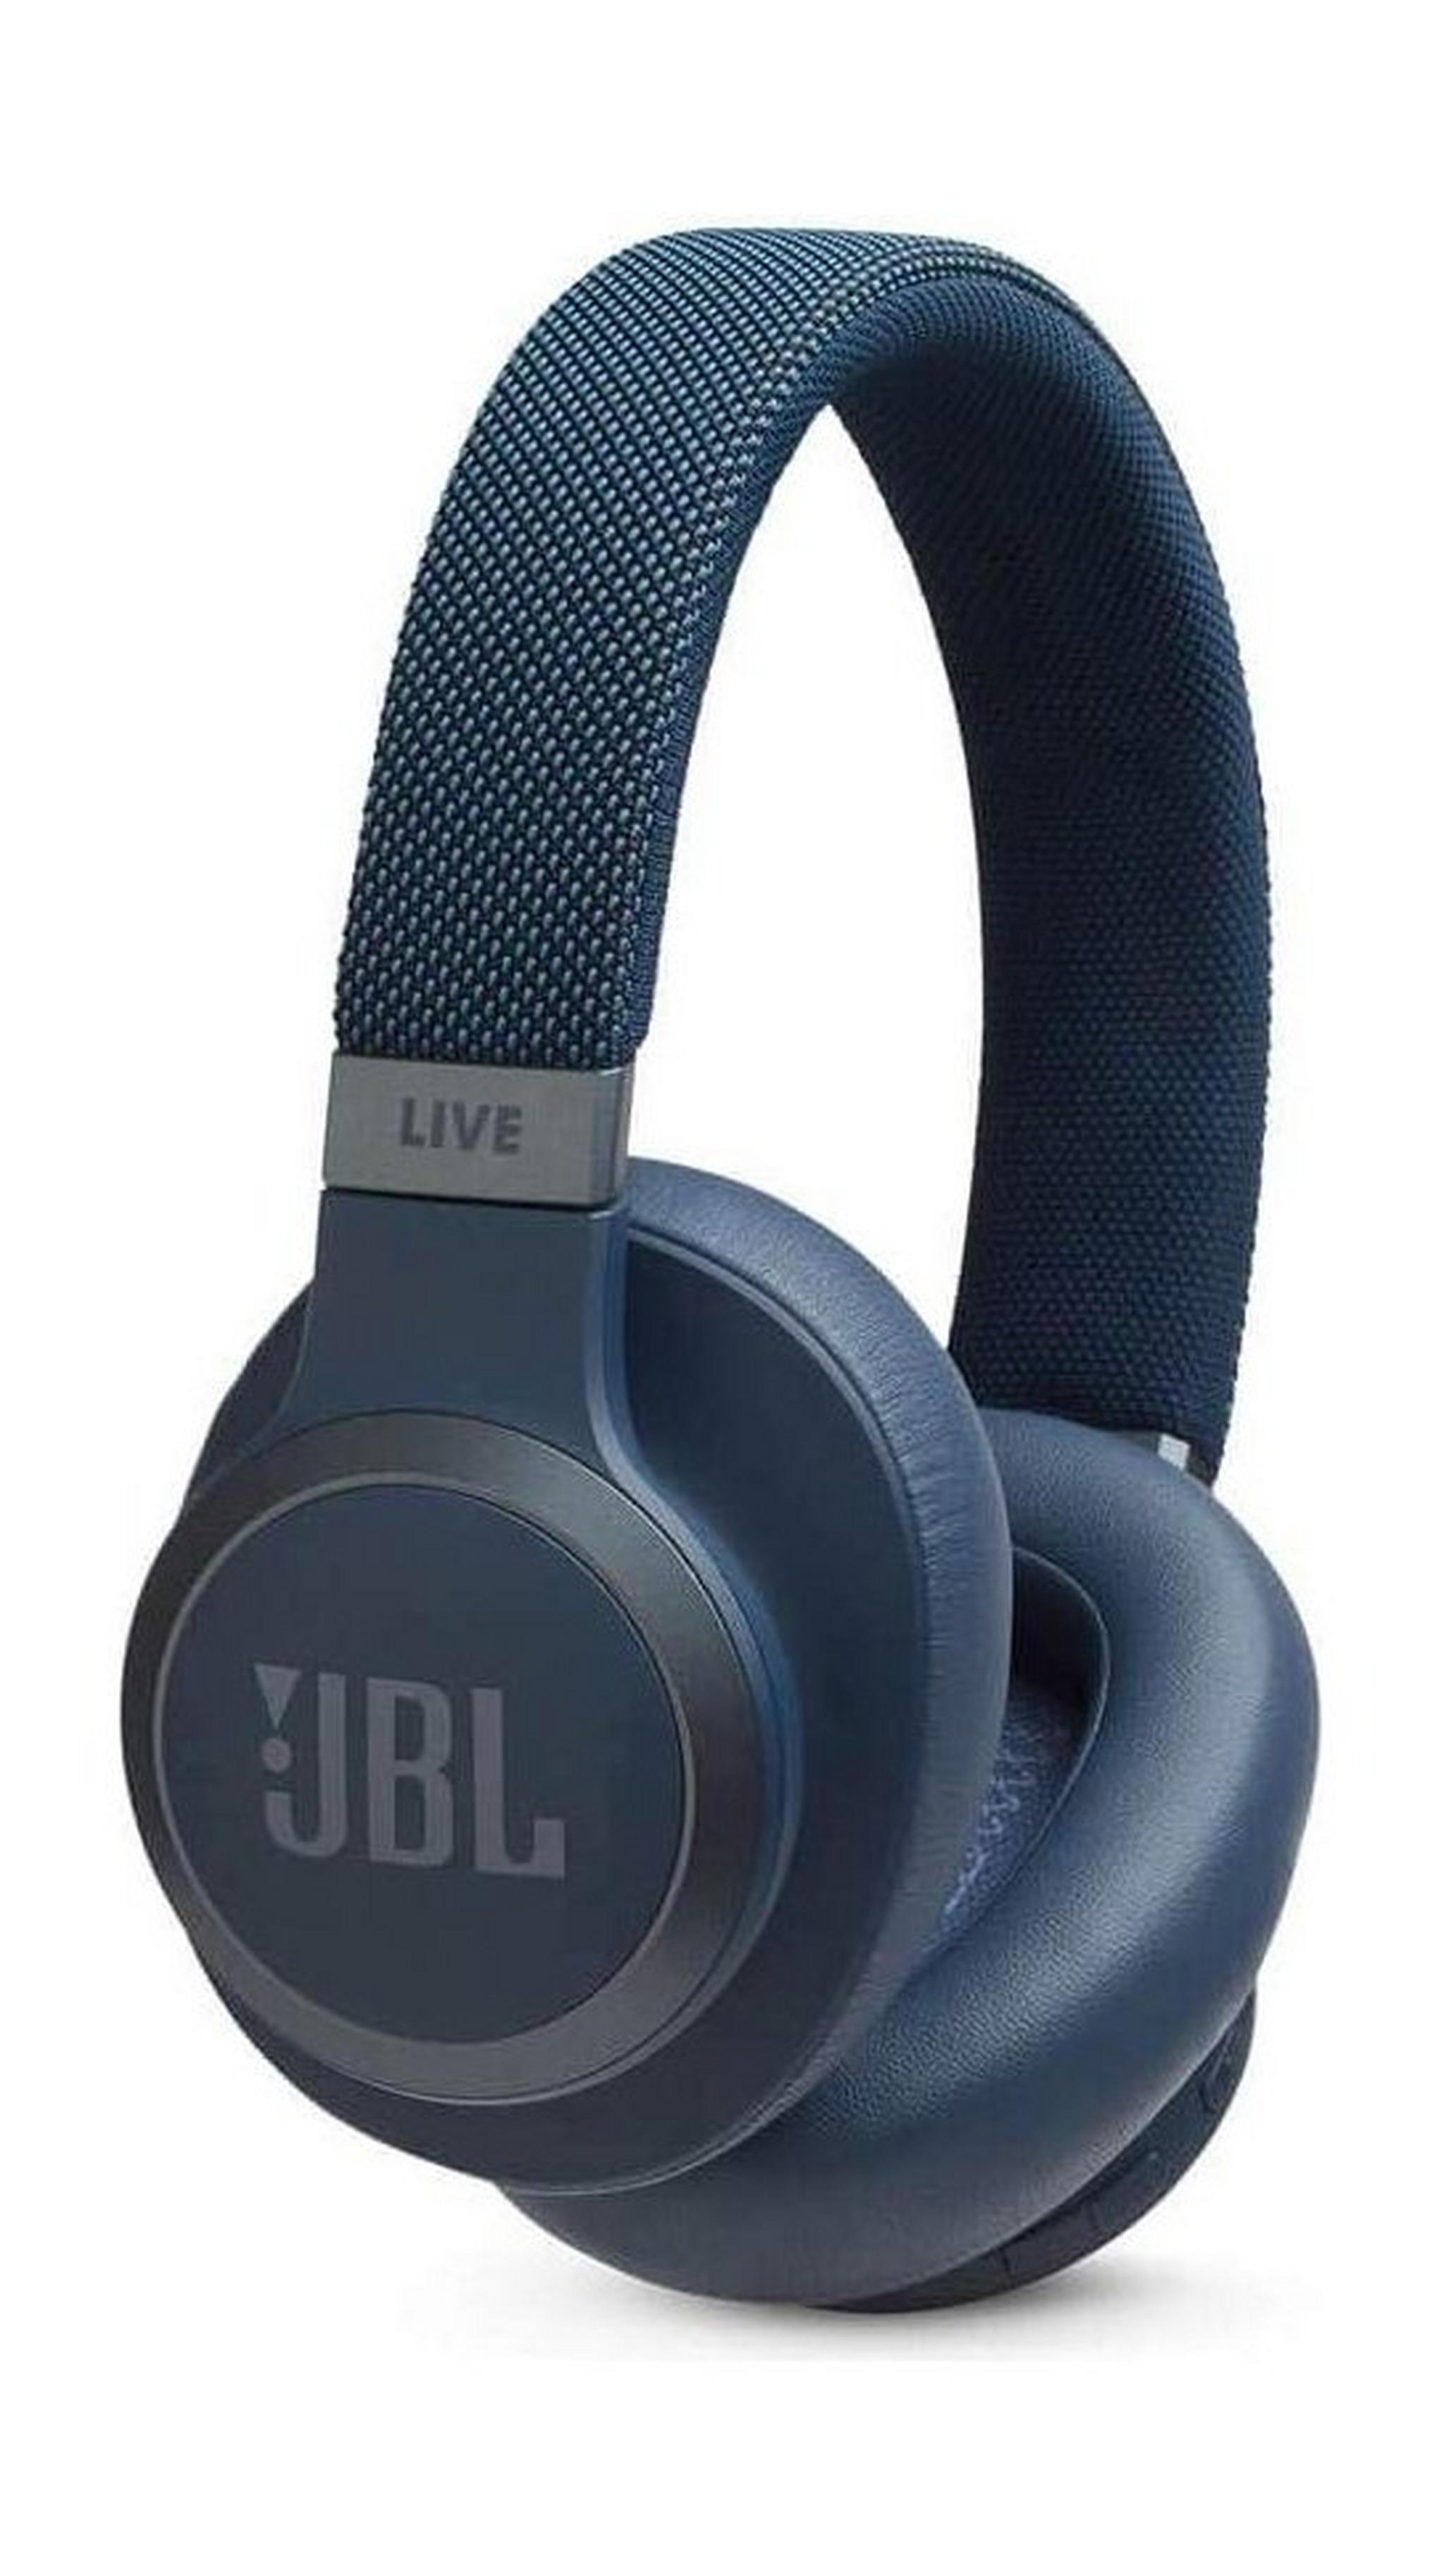 سماعة الرأس جاي بي إل لايف فوق الأذن اللاسلكية مع خاصية إلغاء الضوضاء (650BTNC) - أزرق